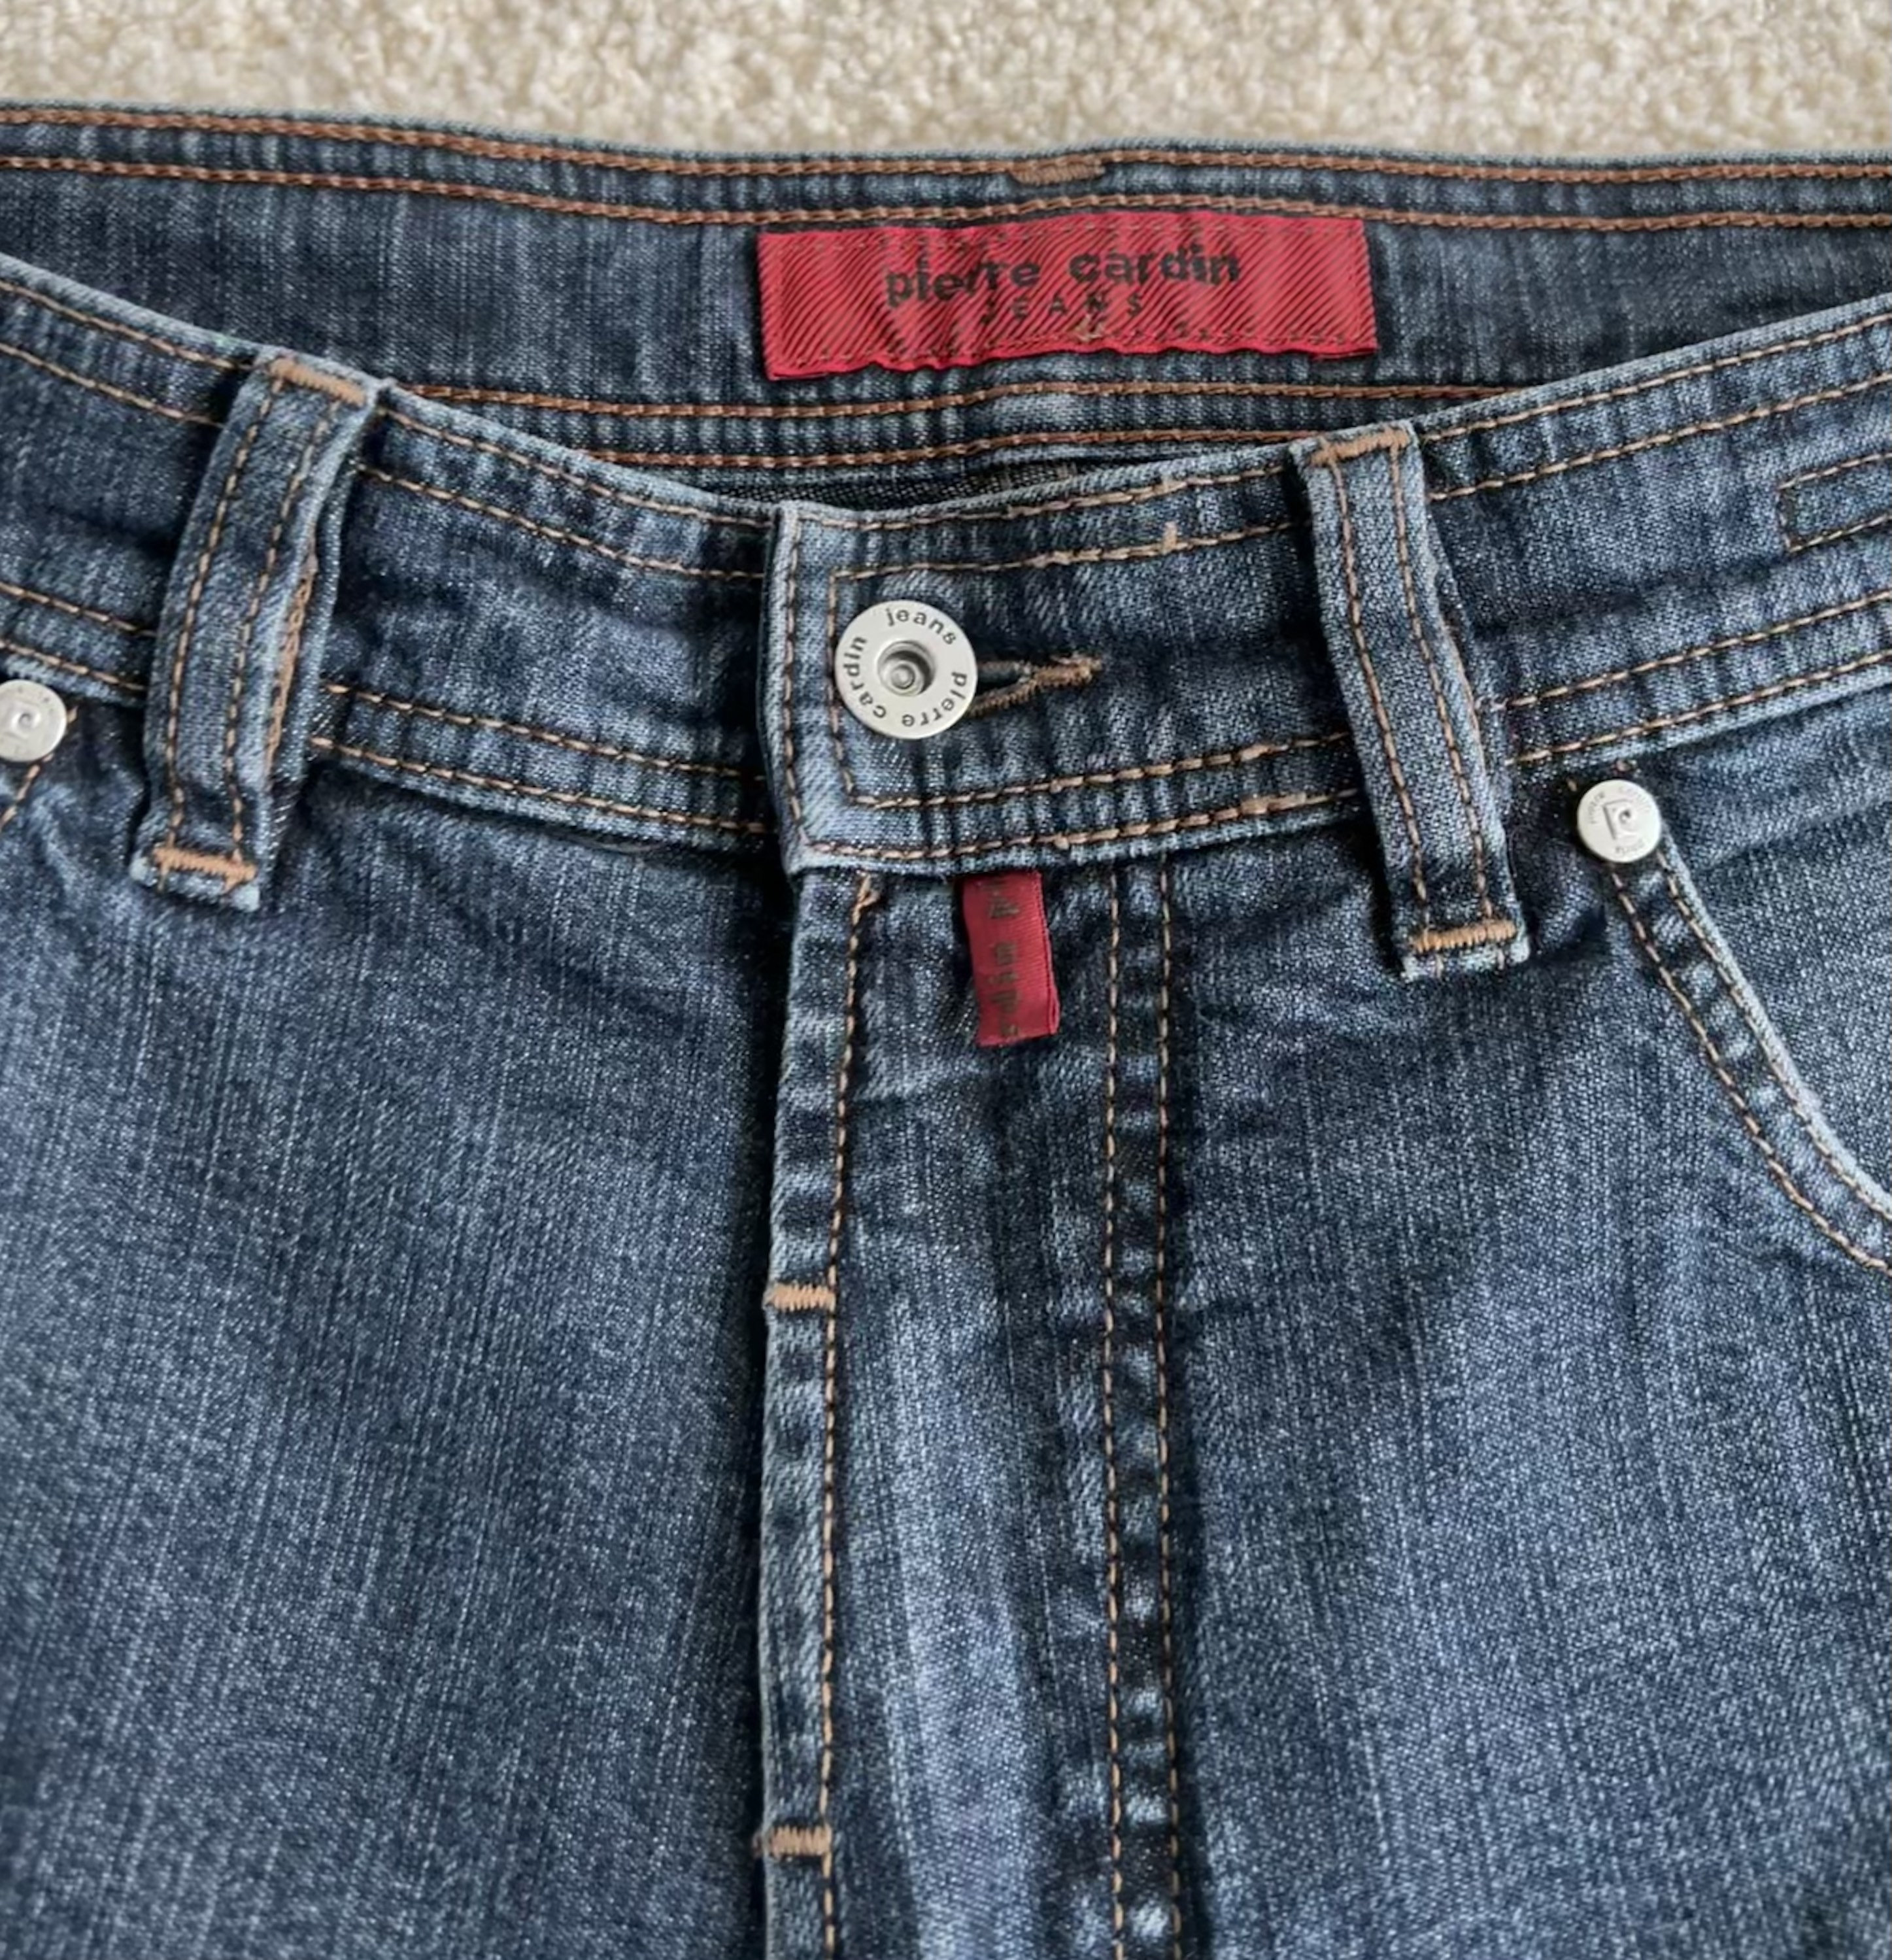 Samenwerking Keer terug Algebra PIERRE CARDIN Jeans Vintage Blue Denim Pants for Men W33 - Etsy